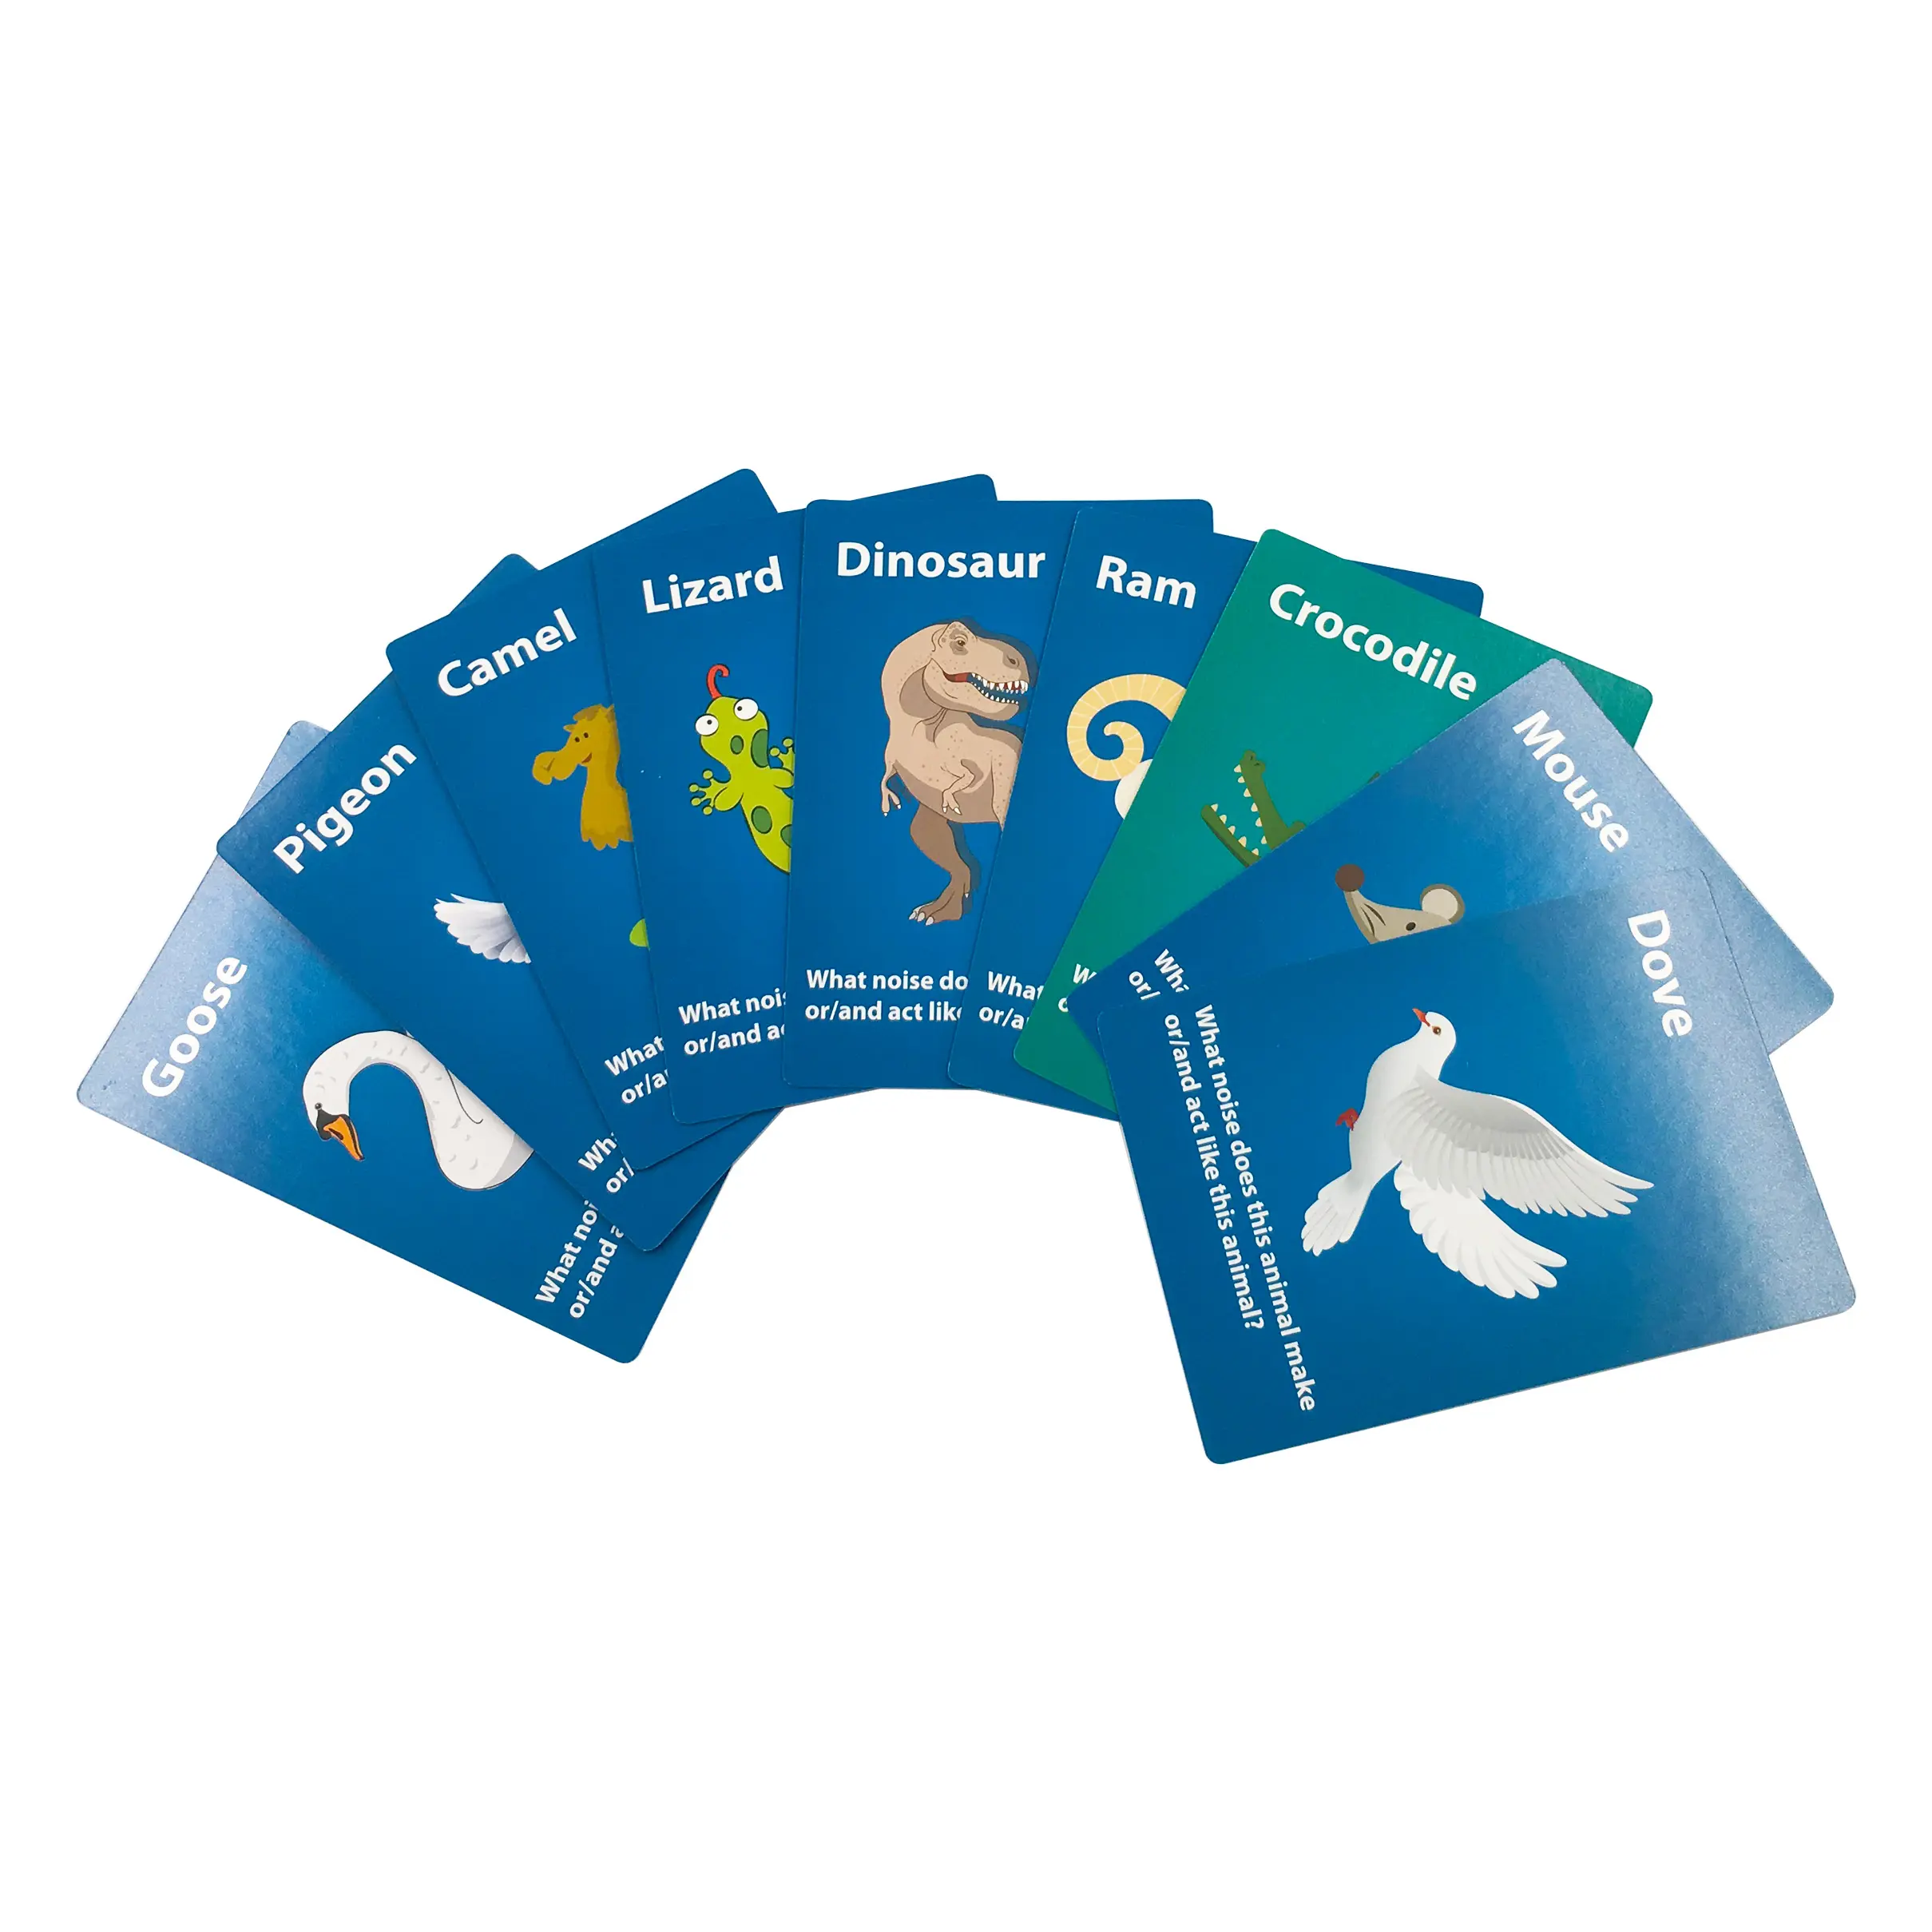 הדפסת לוגו מותאם אישית לדוגמה בחינם לילדים פלאש חינוכי וכרטיסי משחק קוגניטיביים עיצוב מותאם אישית למשחק ולמידה